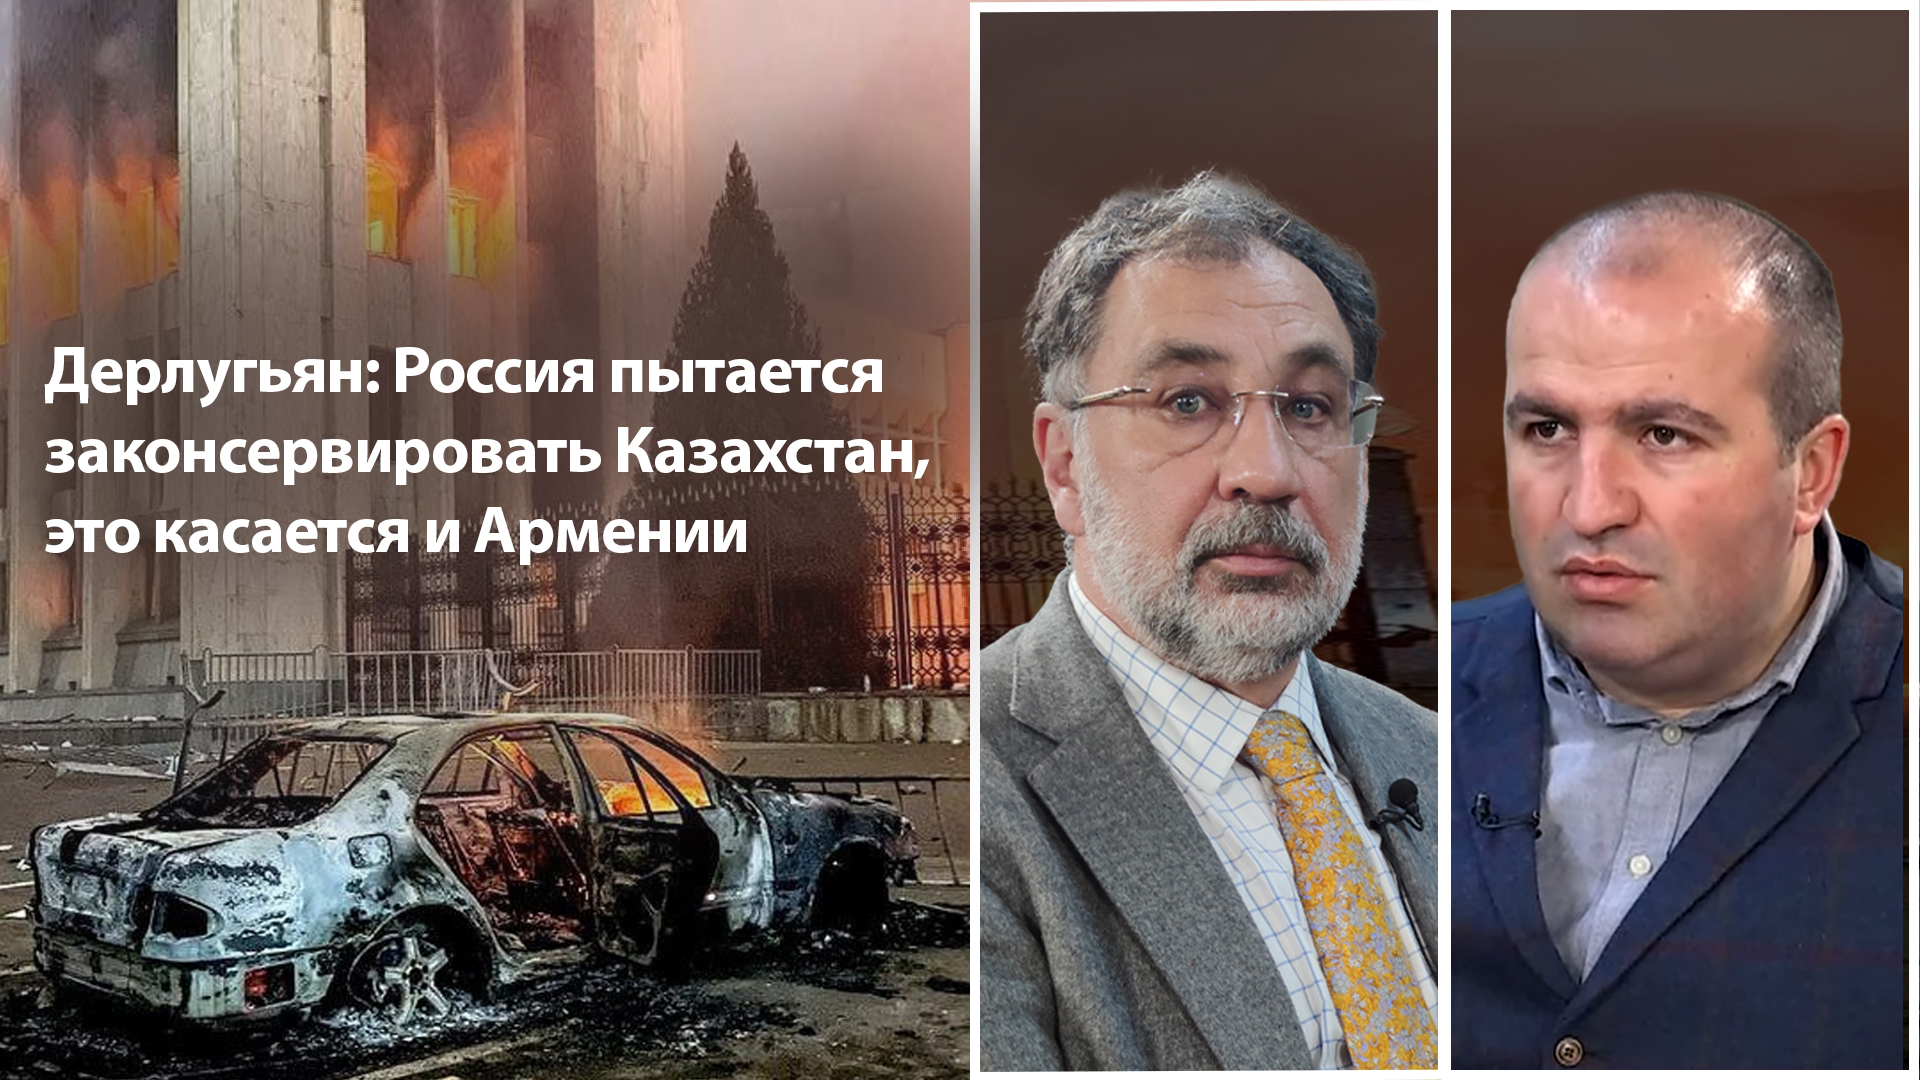 Дерлугьян: Россия пытается законсервировать Казахстан, это касается и Армении